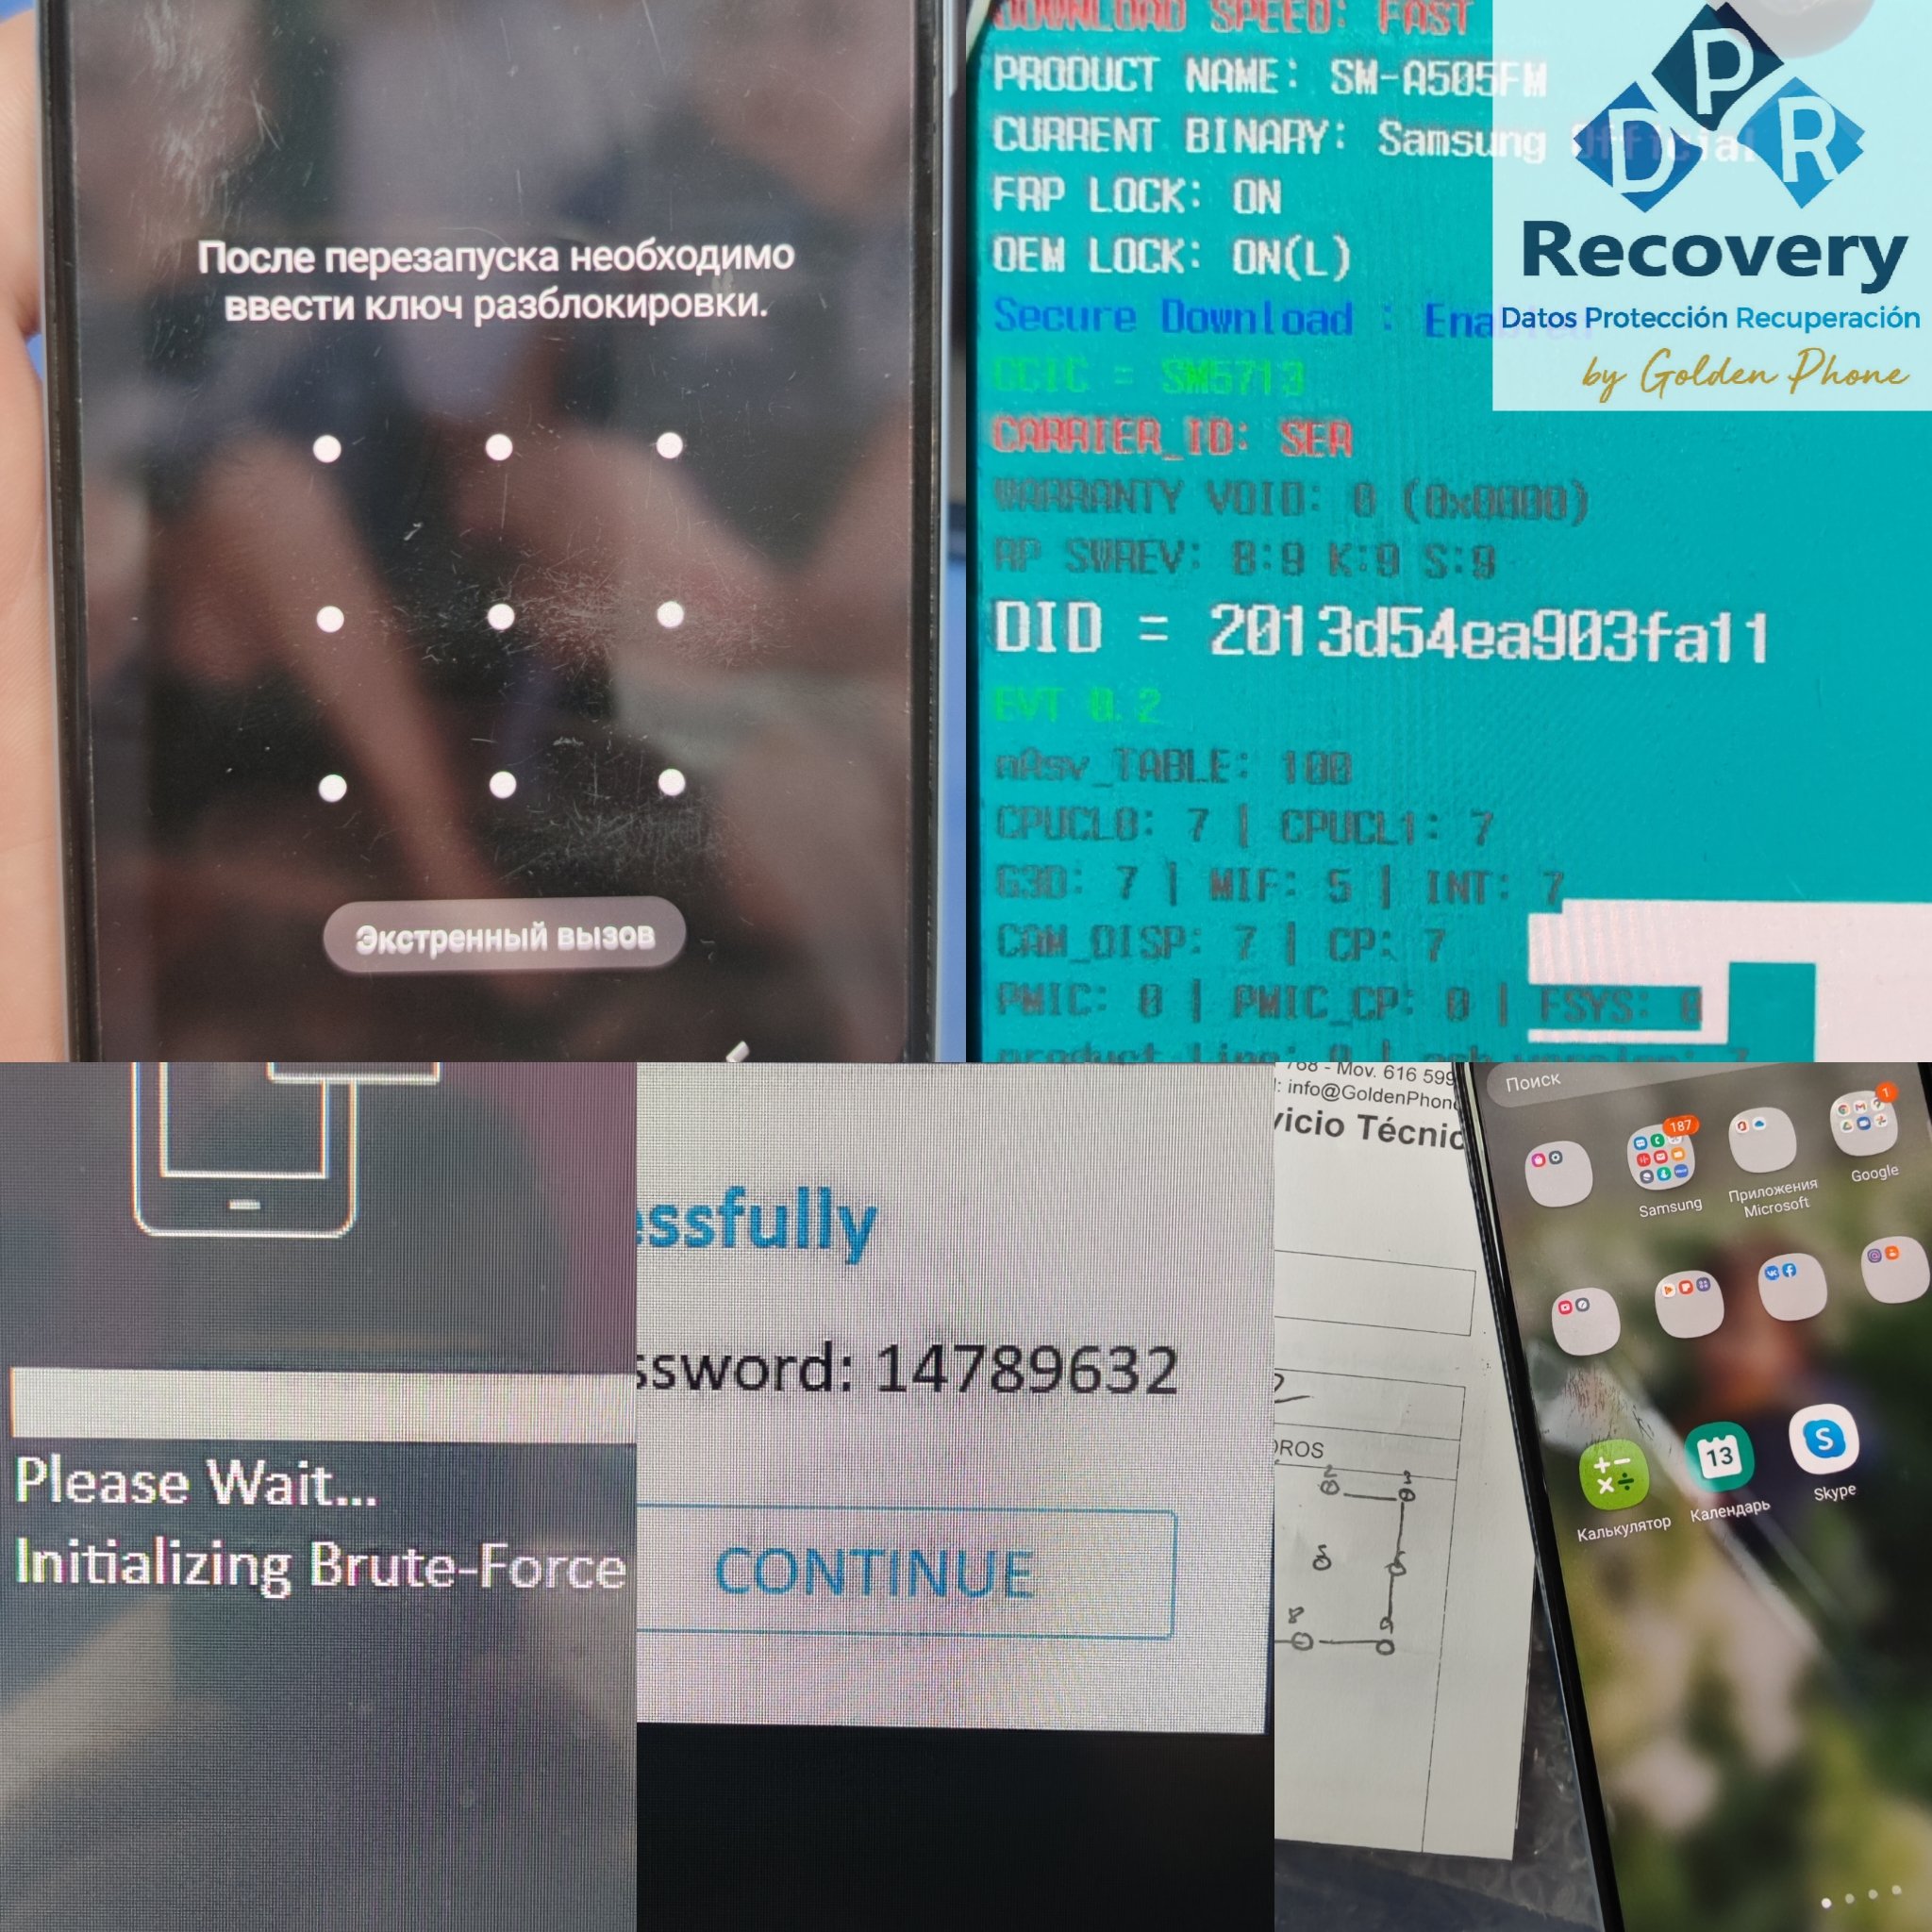 Teléfono Samsung A50 con Android 11 que nos envían desde Vigo con patrón al inicio, necesitan los datos que hay en el teléfono y no lo recuerdan.